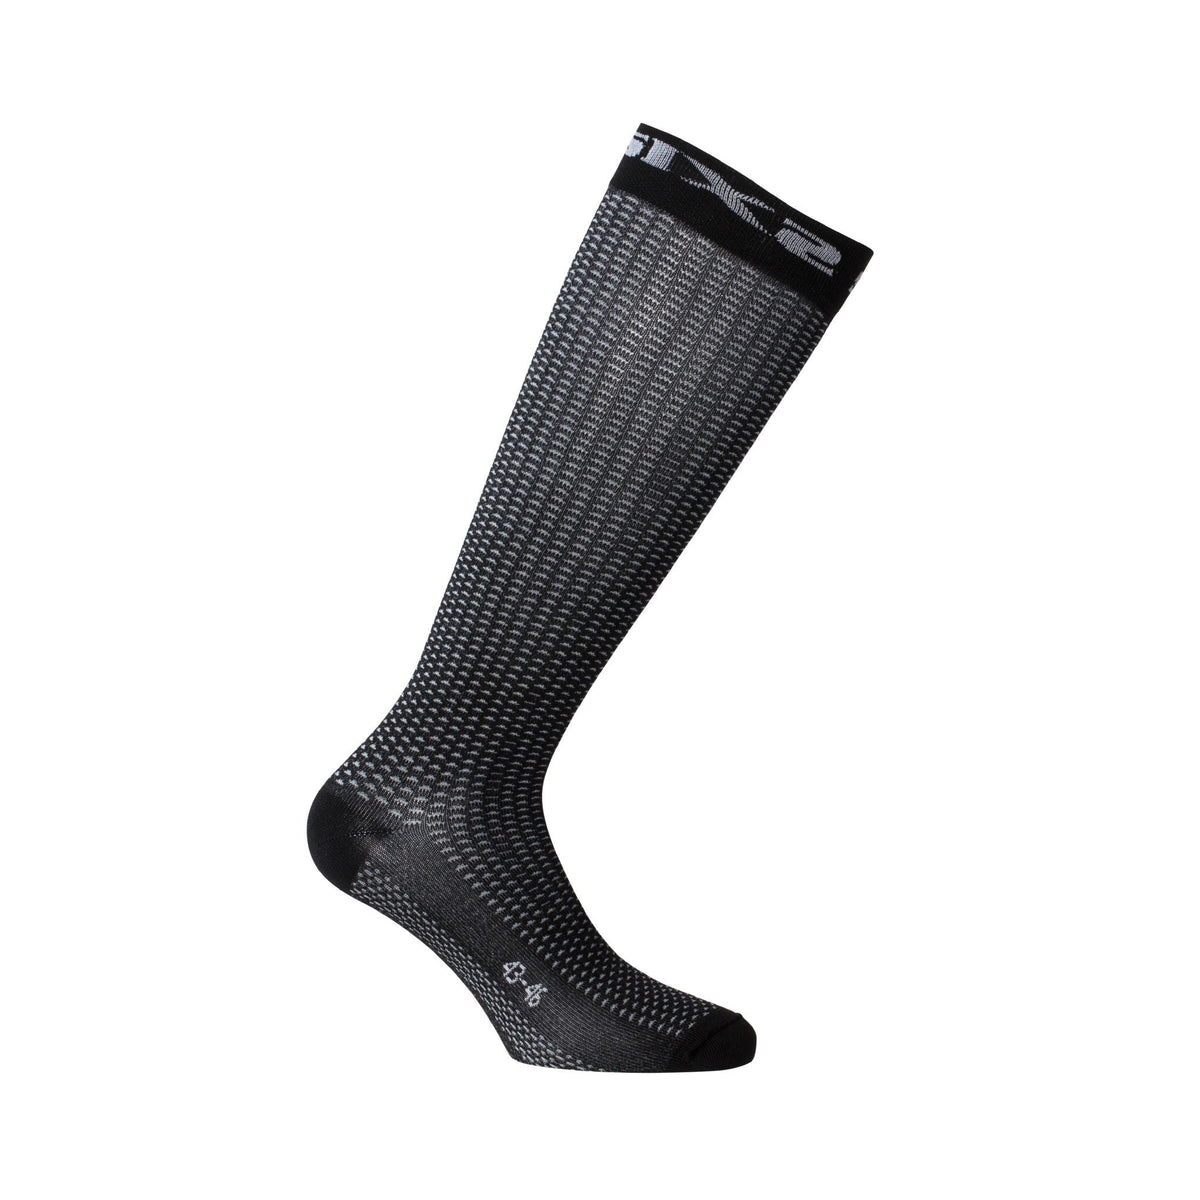 SIX2 Long S Socks